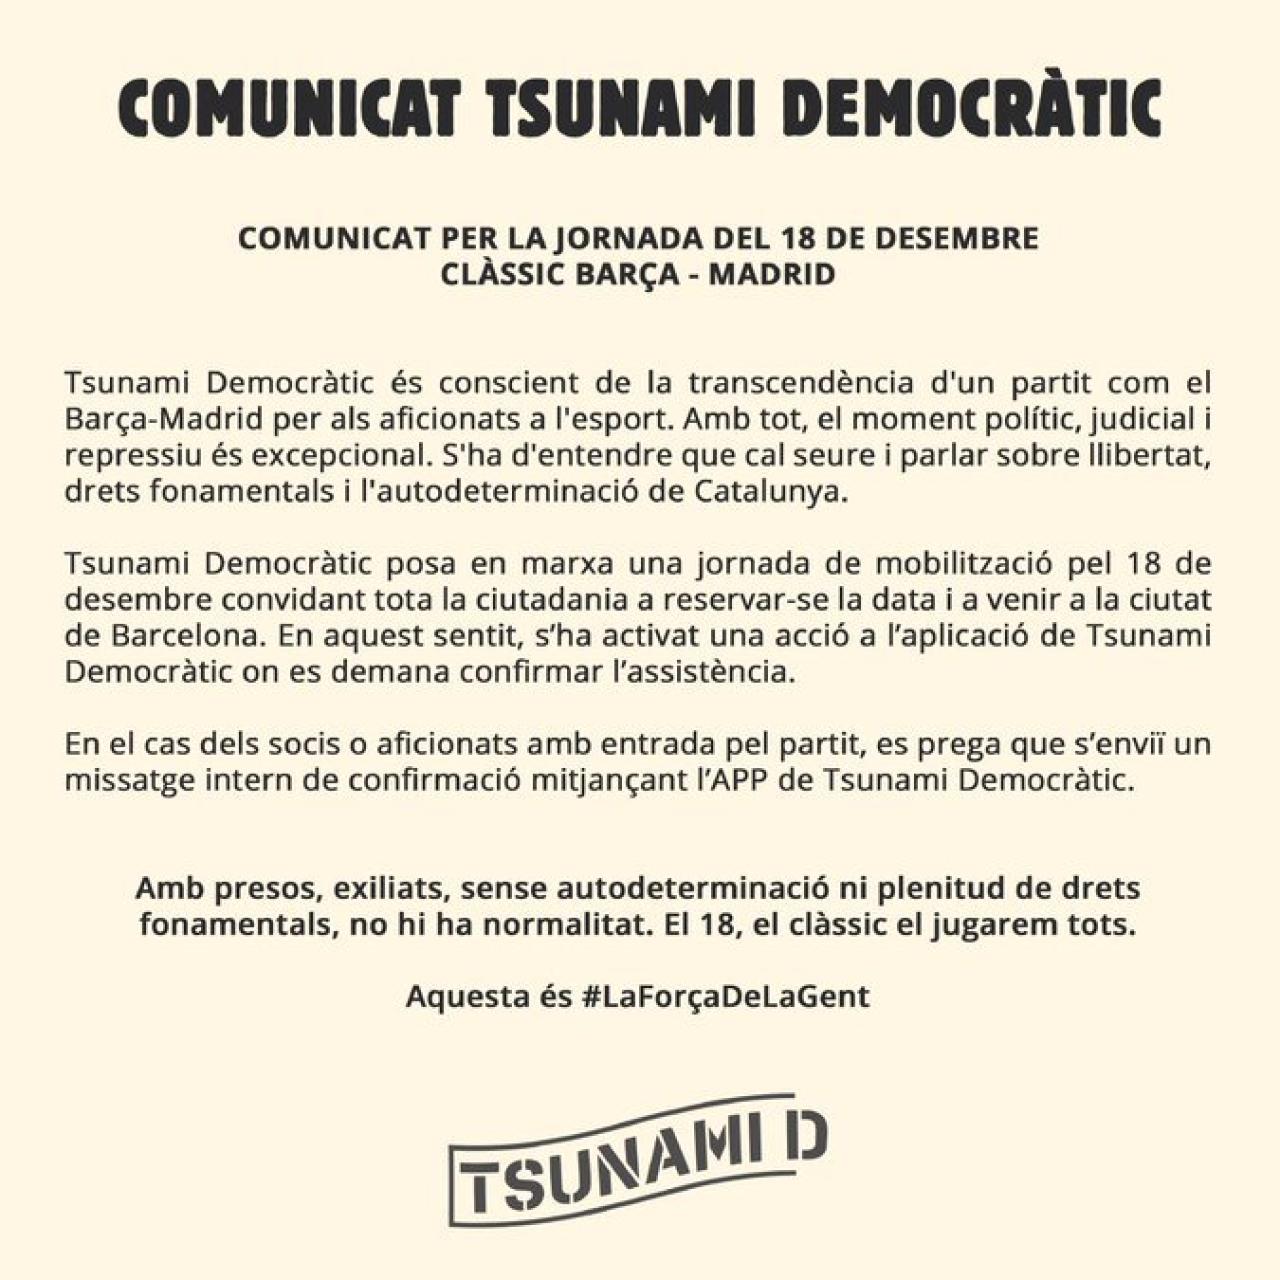 El comunicado de Tsunami Democratic